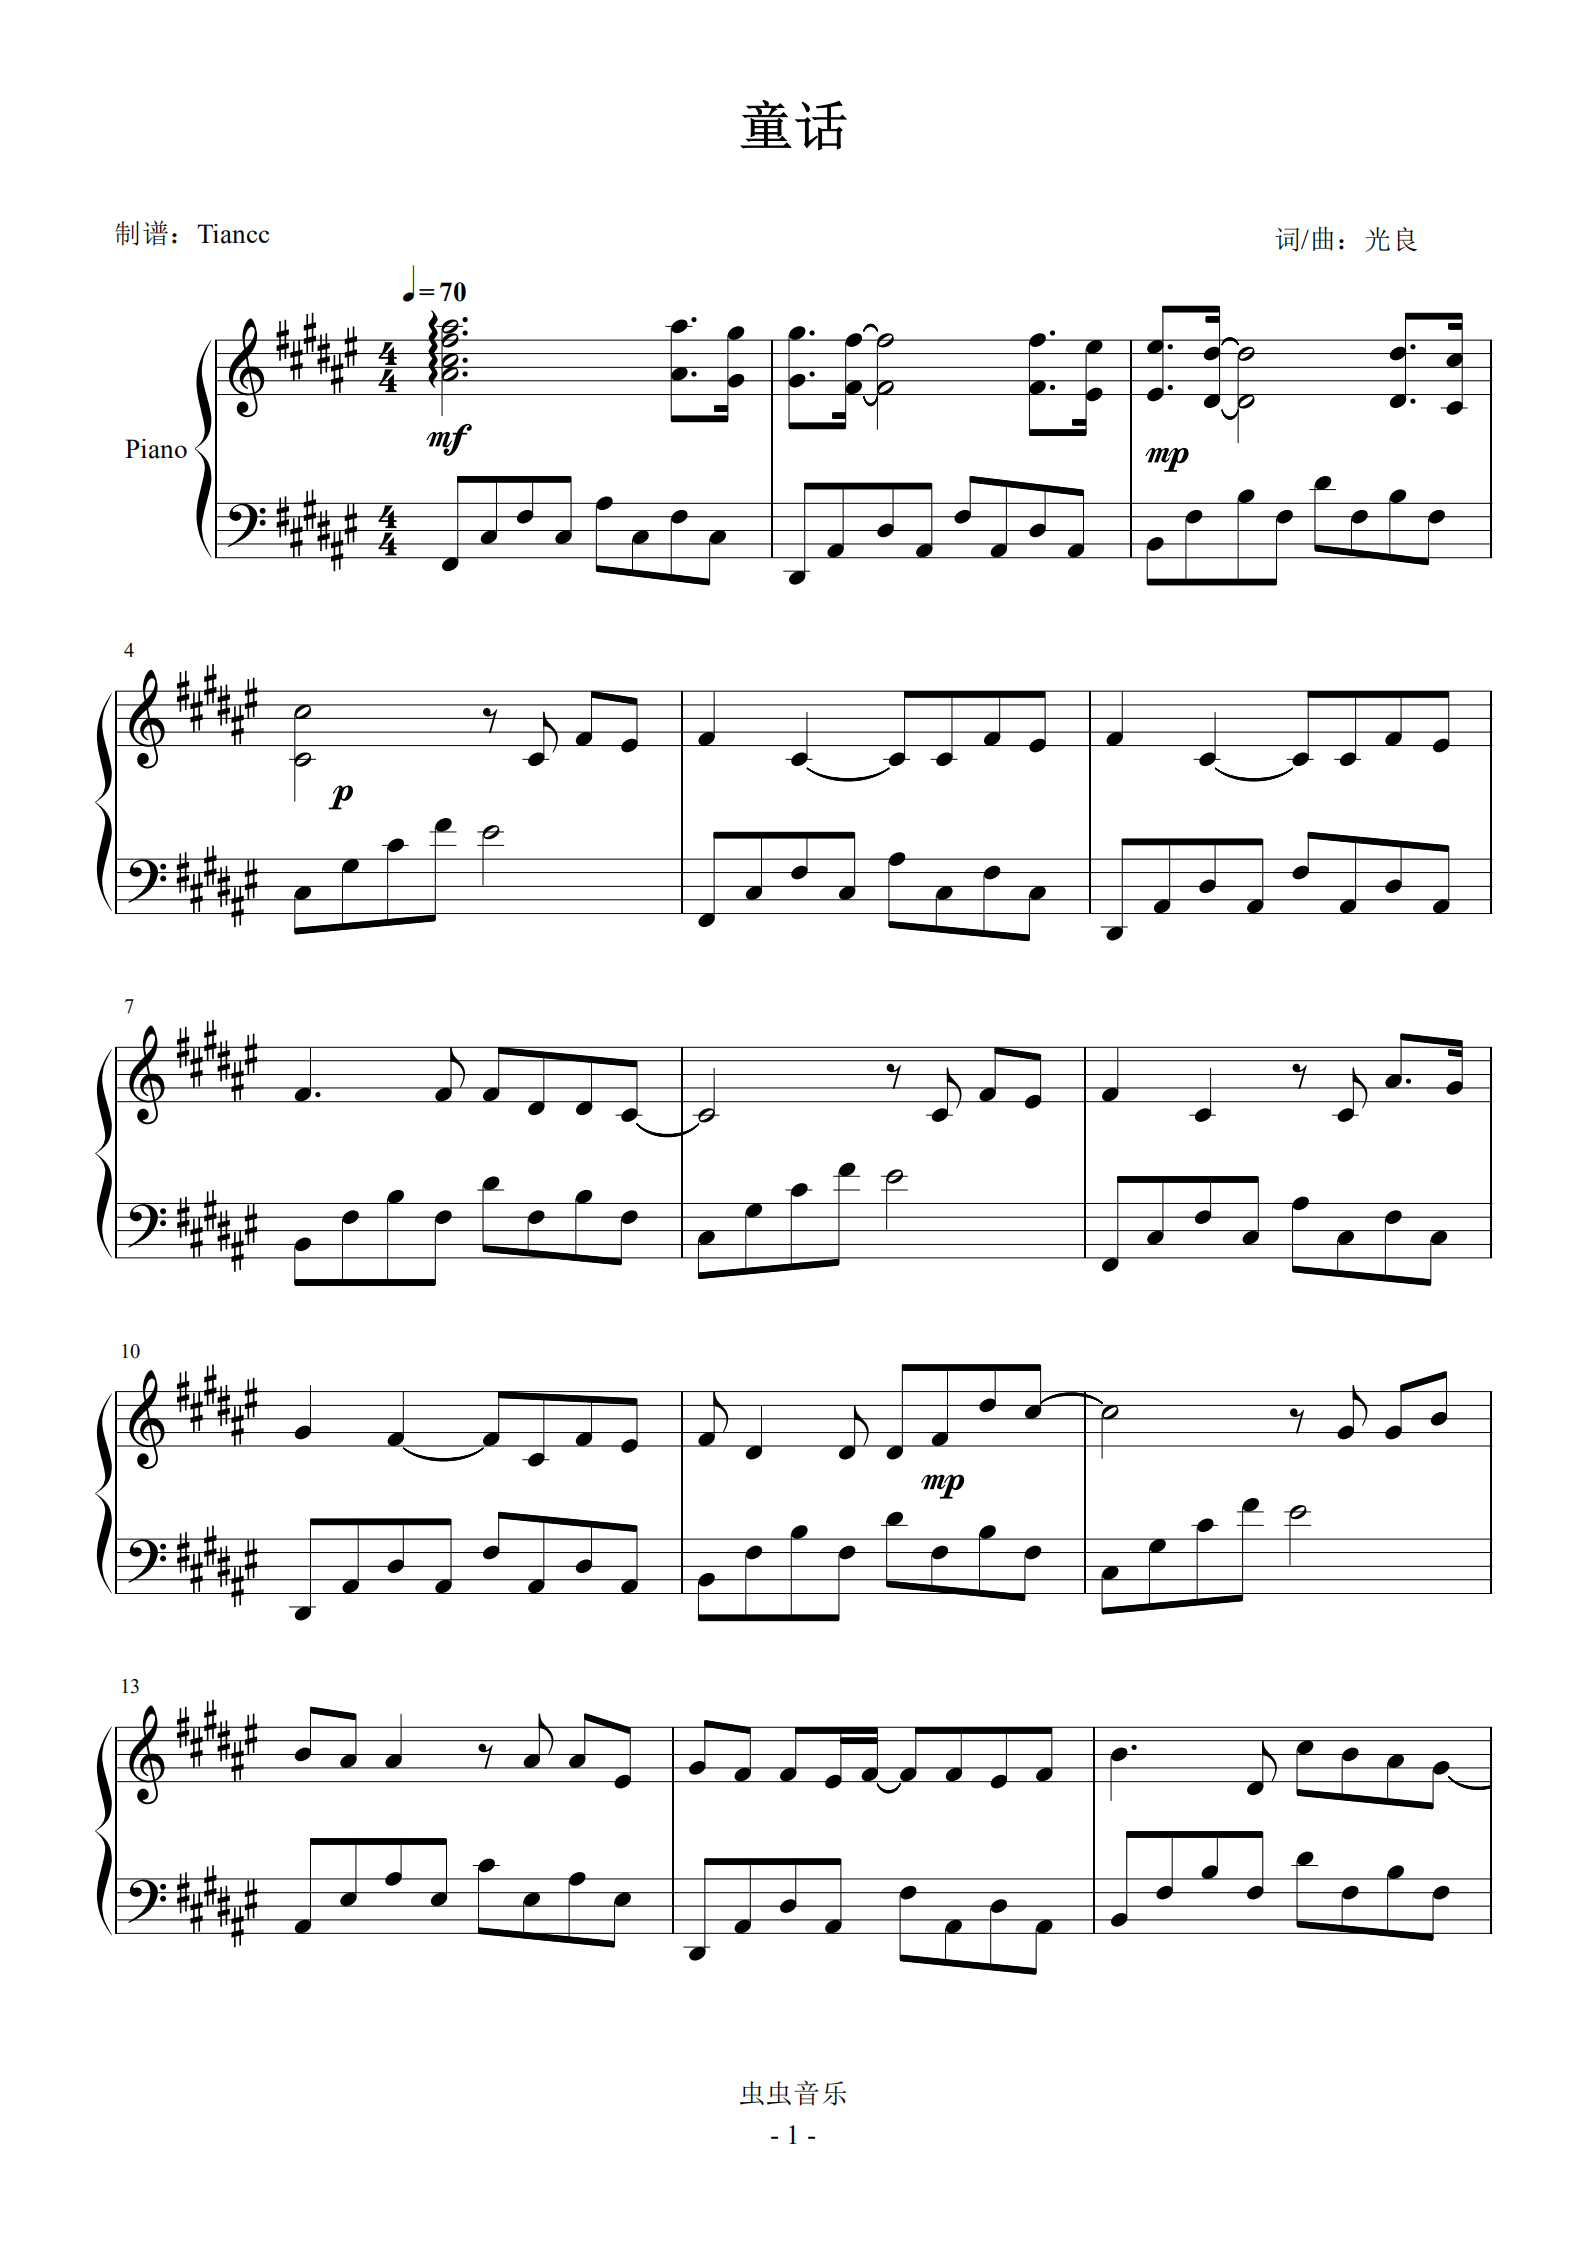 首页 钢琴谱库 《童话》完美可弹mv版谱,599难度